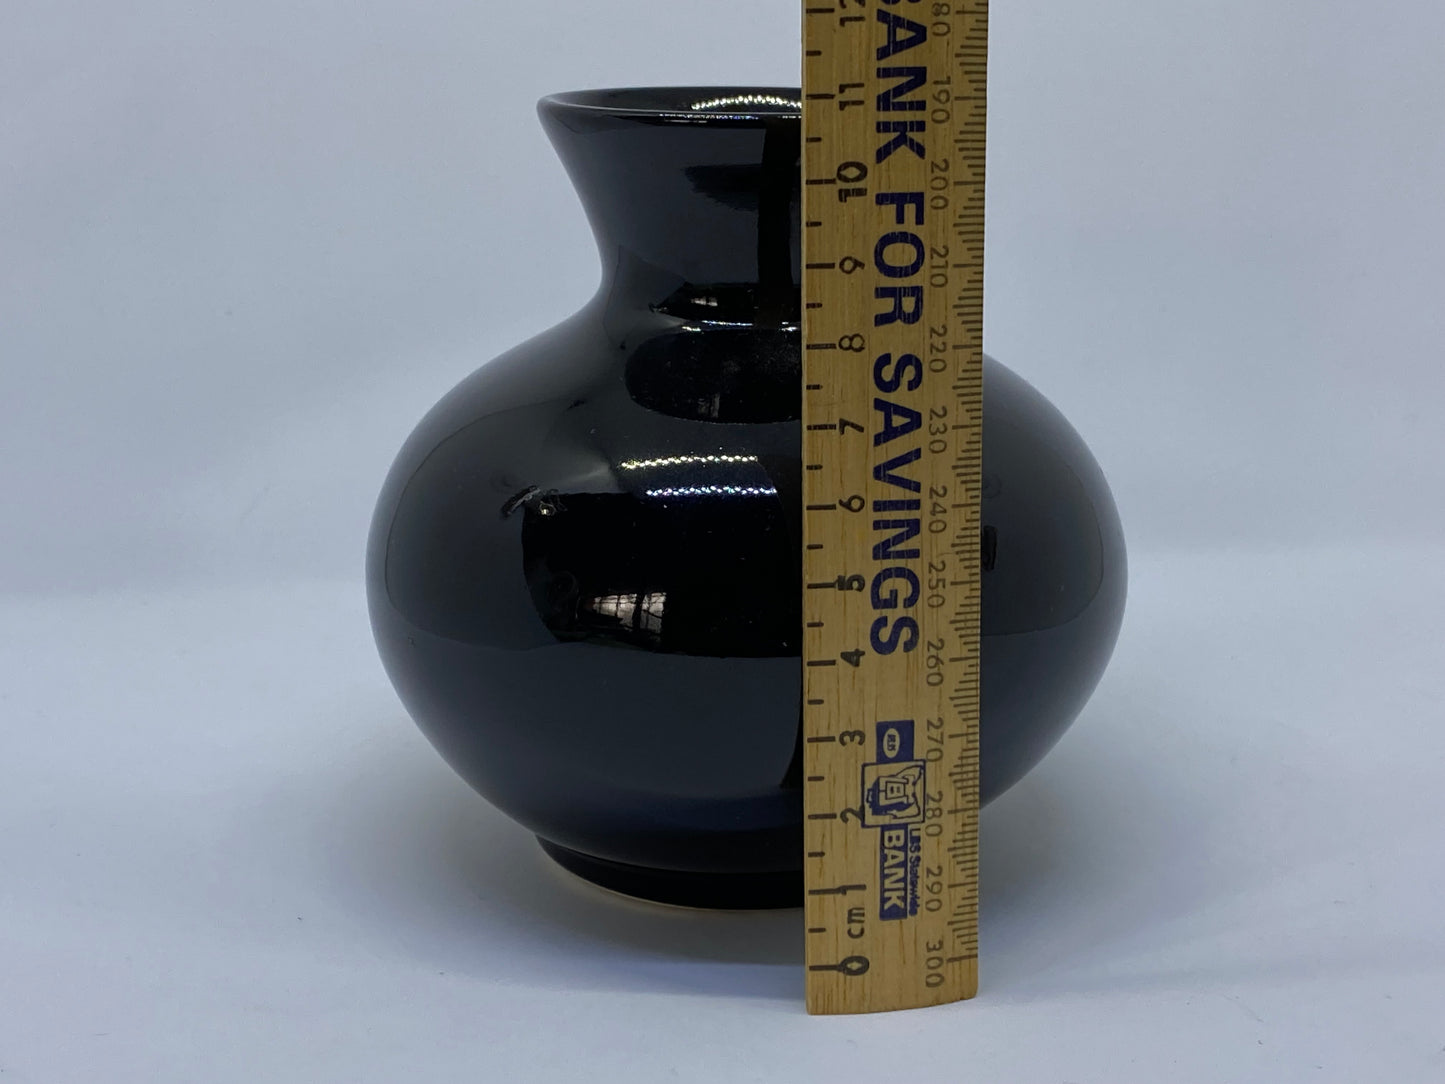 Hanstan Australia black vase